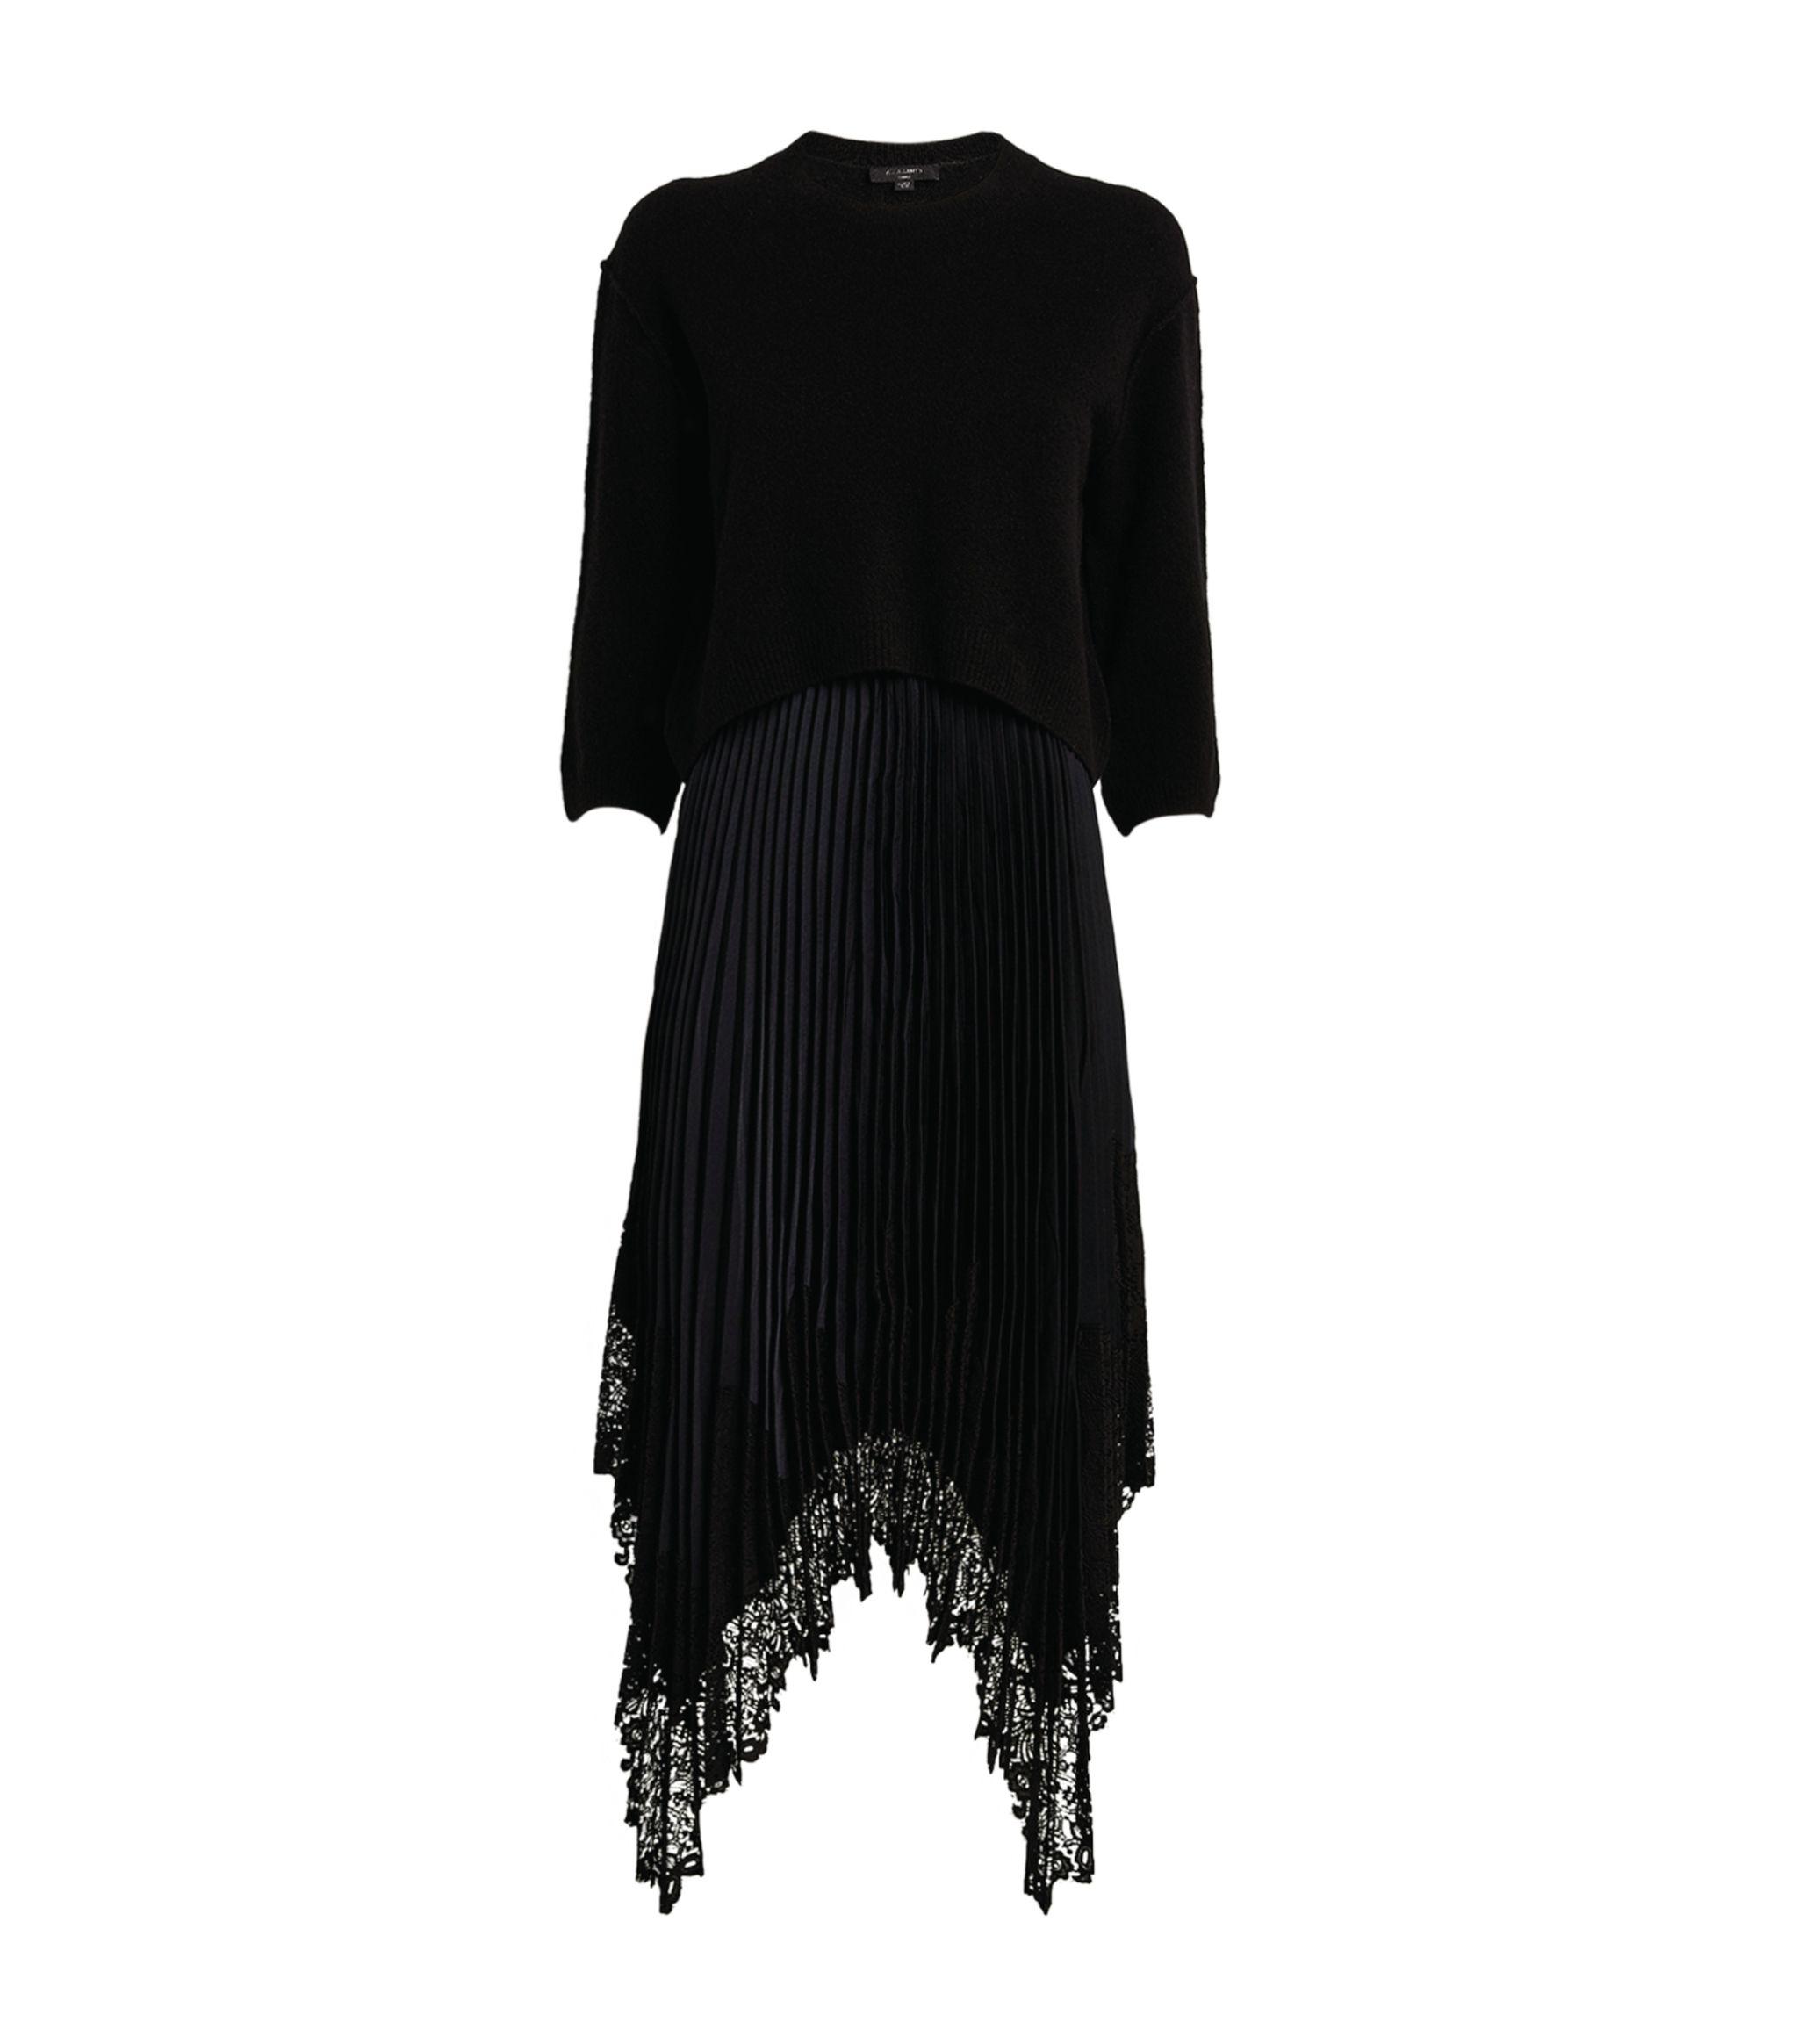 AllSaints Wool Aspyn 2-in-1 Dress in Black - Lyst